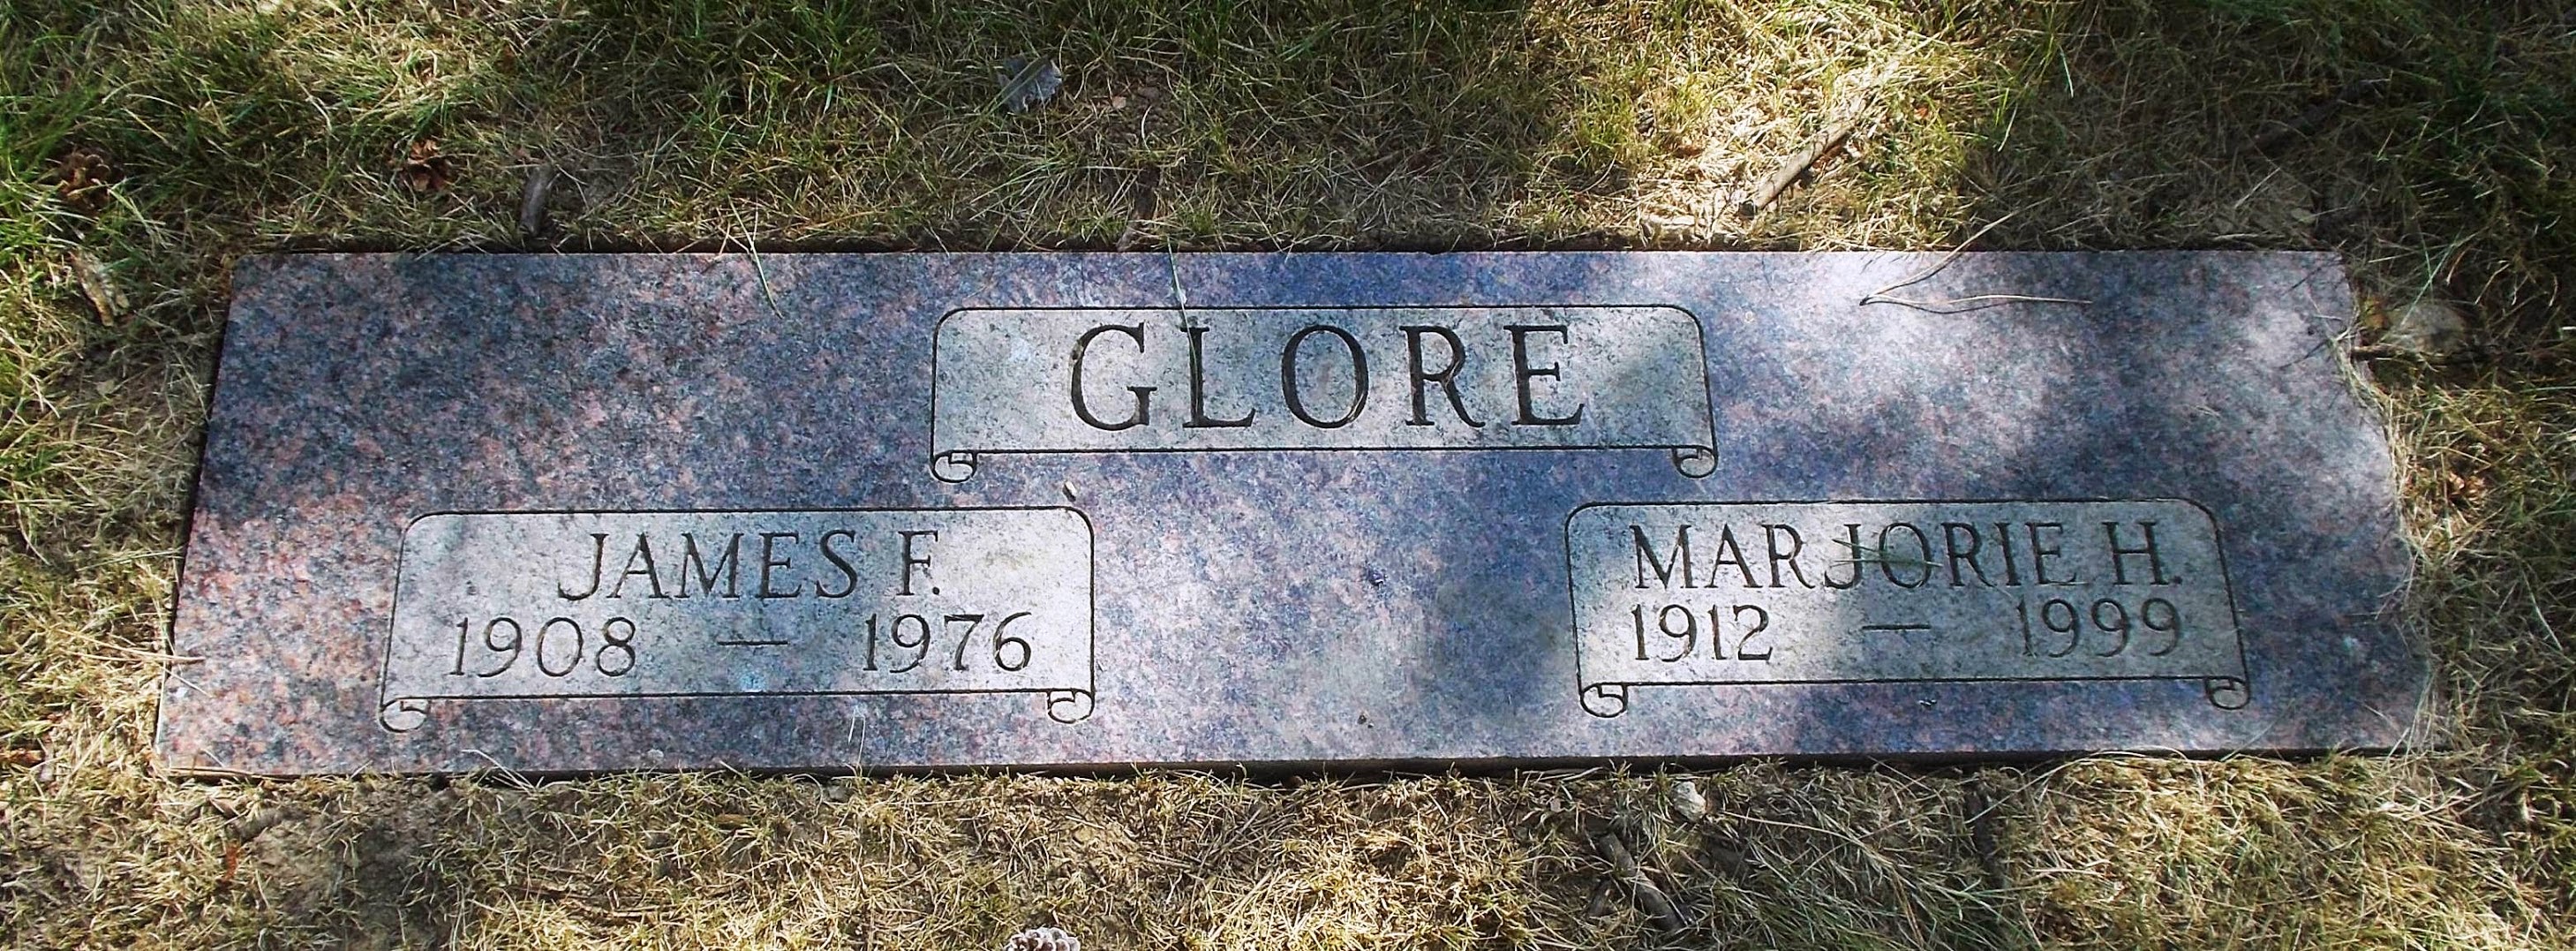 Marjorie H Glore